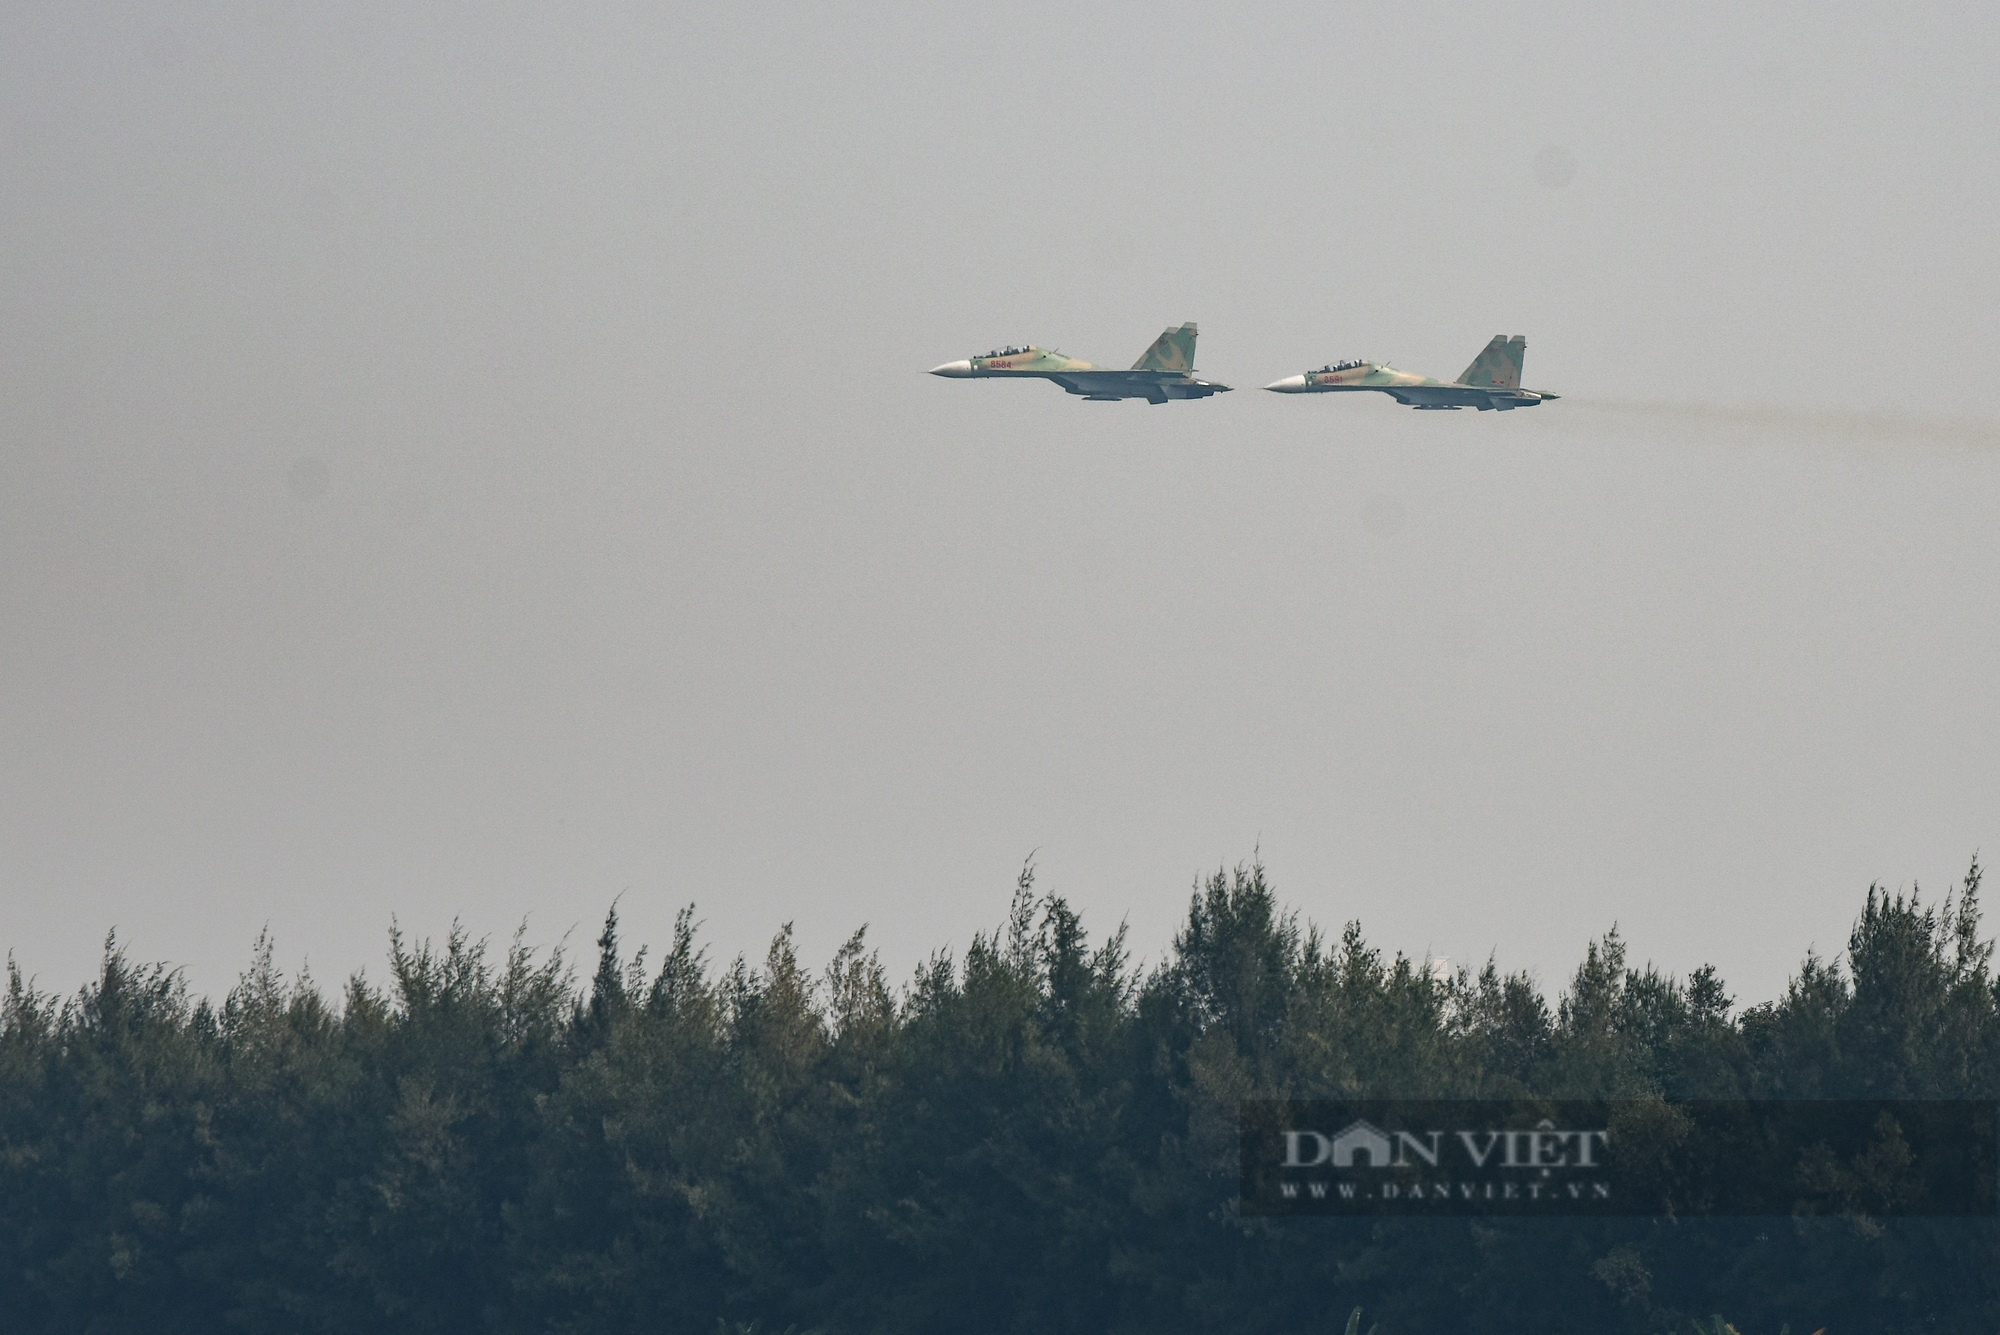 Nếu bạn yêu thích máy bay và muốn hiểu sâu hơn về loại máy bay Su-30MK2 thì hãy đến và xem hình ảnh này. Đây là loại máy bay chiến đấu đa năng, có khả năng tấn công đất và không gian, là vũ khí quan trọng của không quân Việt Nam.